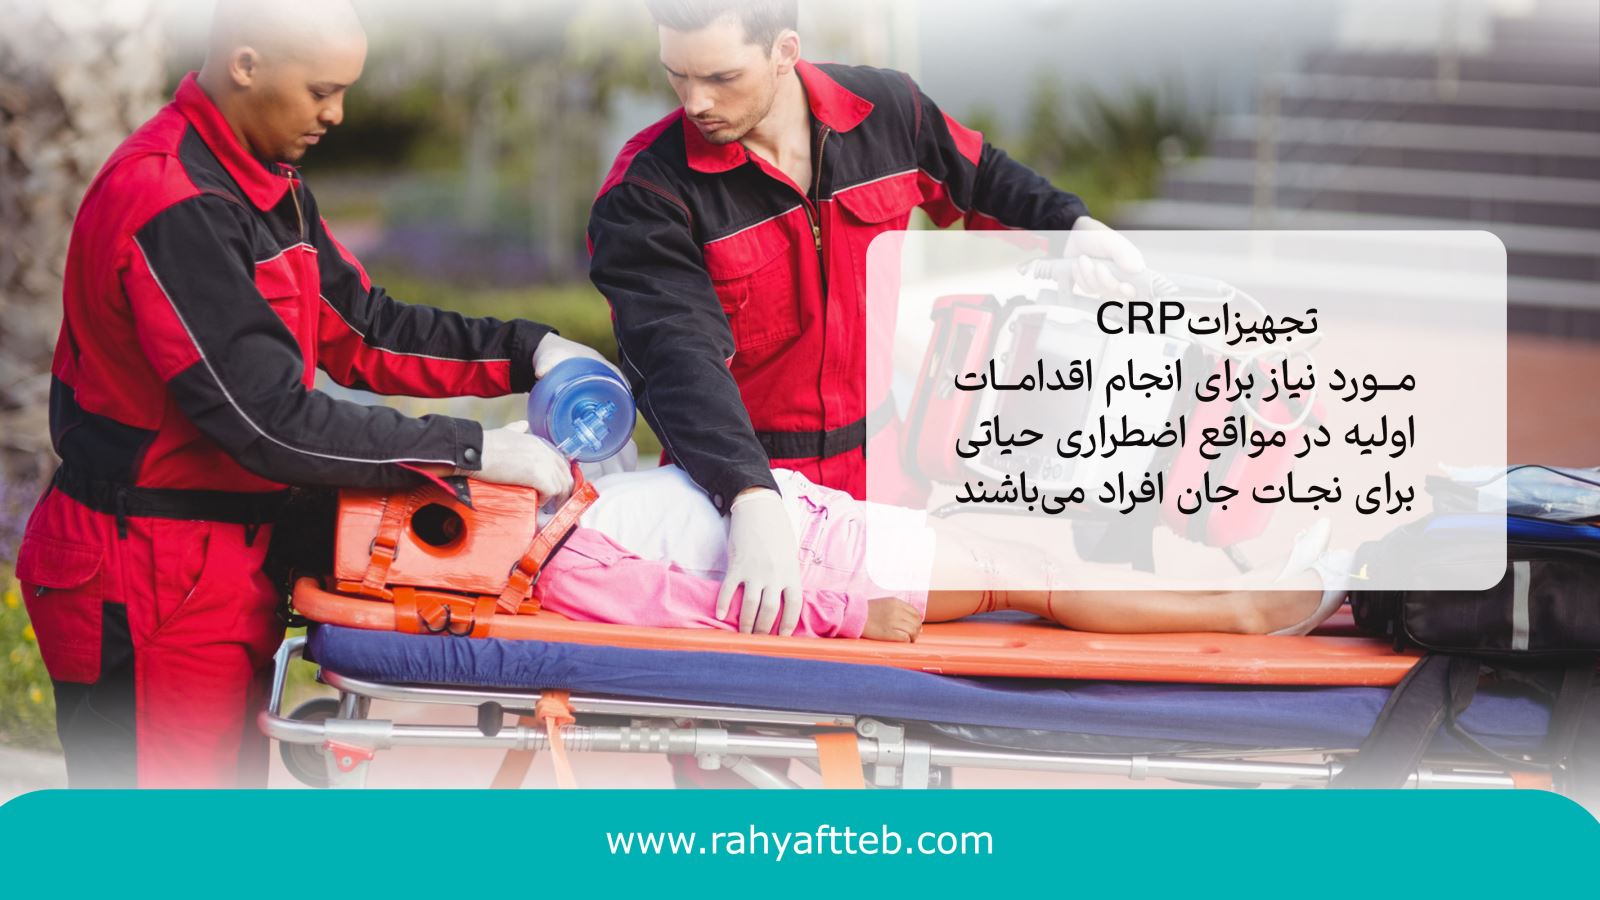 تجهیزات CPR